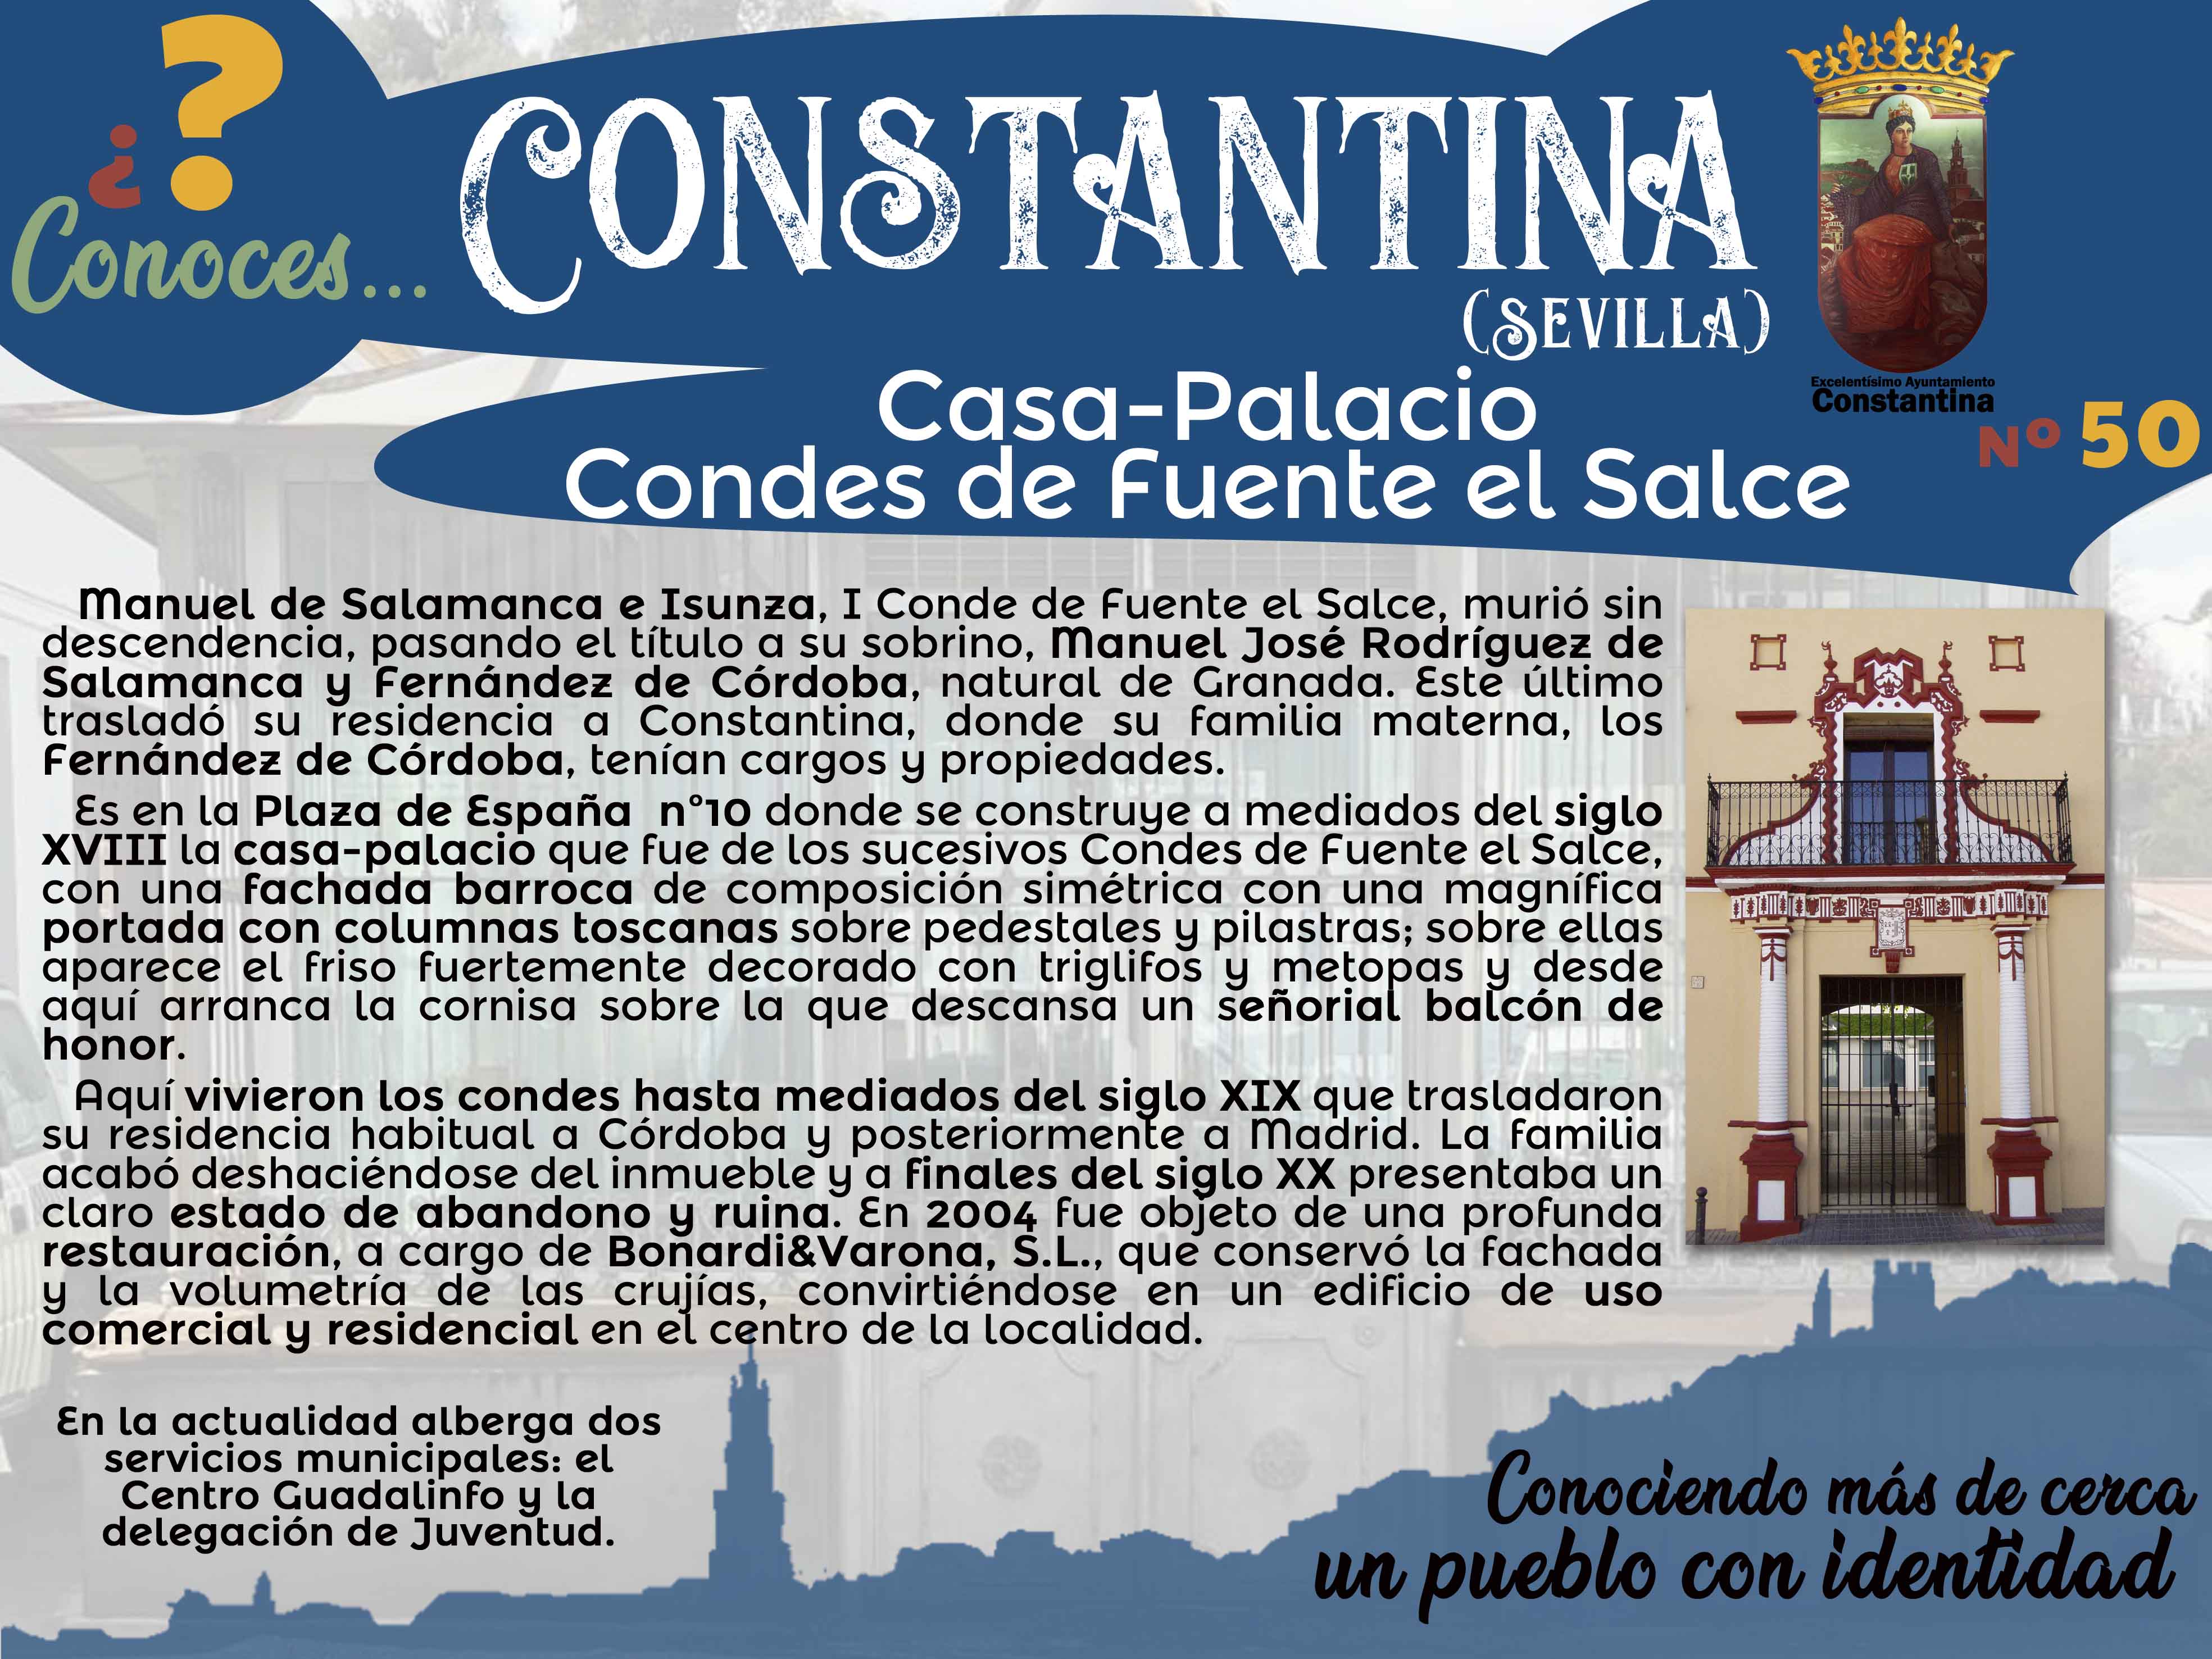 50 Casa Palacio Condes de Fuente el Salce Constantina